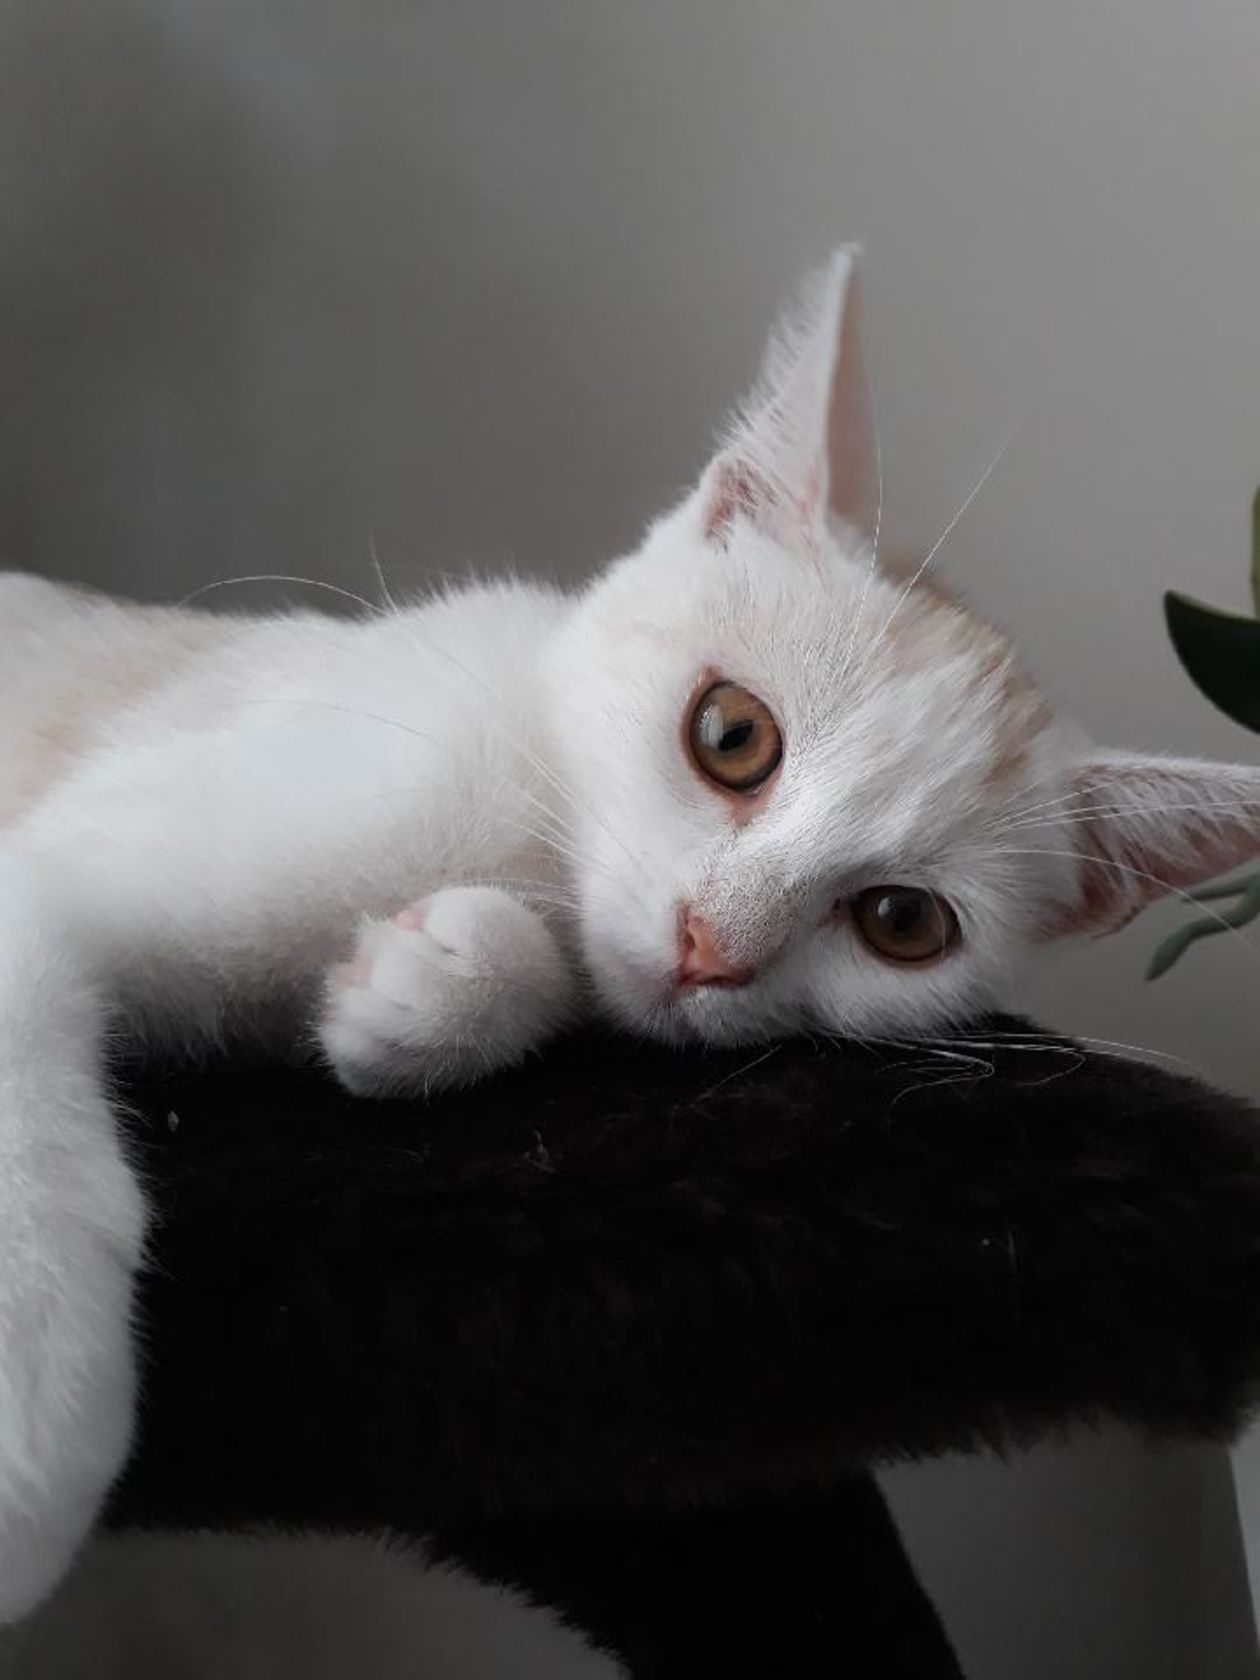 Światowy Dzień Kota 2019. Zdjęcia kotów czytelników